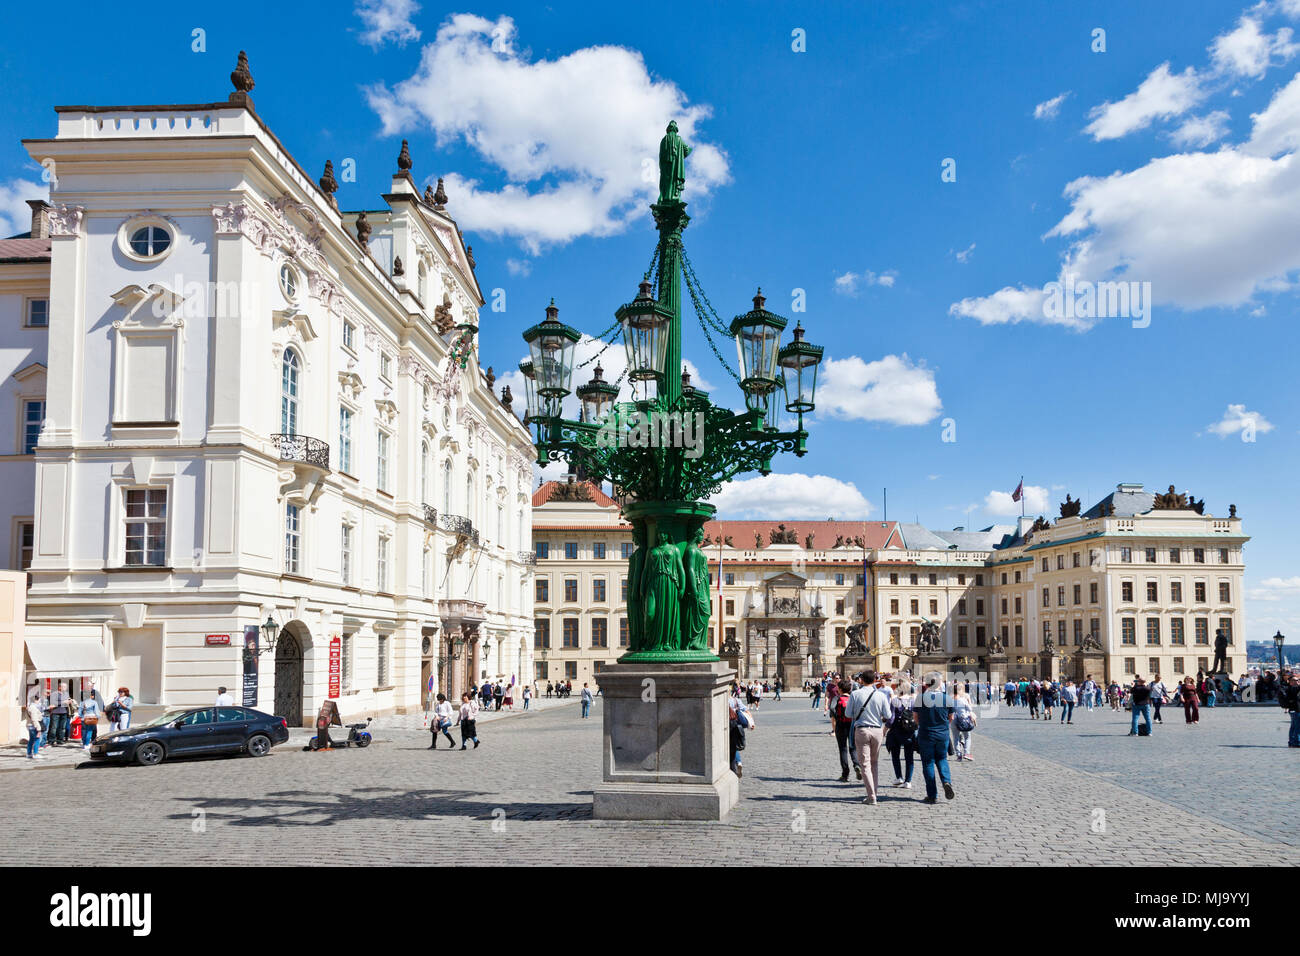 Litinová plynová lampa, Arcibiskupsky palac, Hradcanske namesti, Prazsky hrad (UNESCO), Praha, Ceska republika Foto Stock